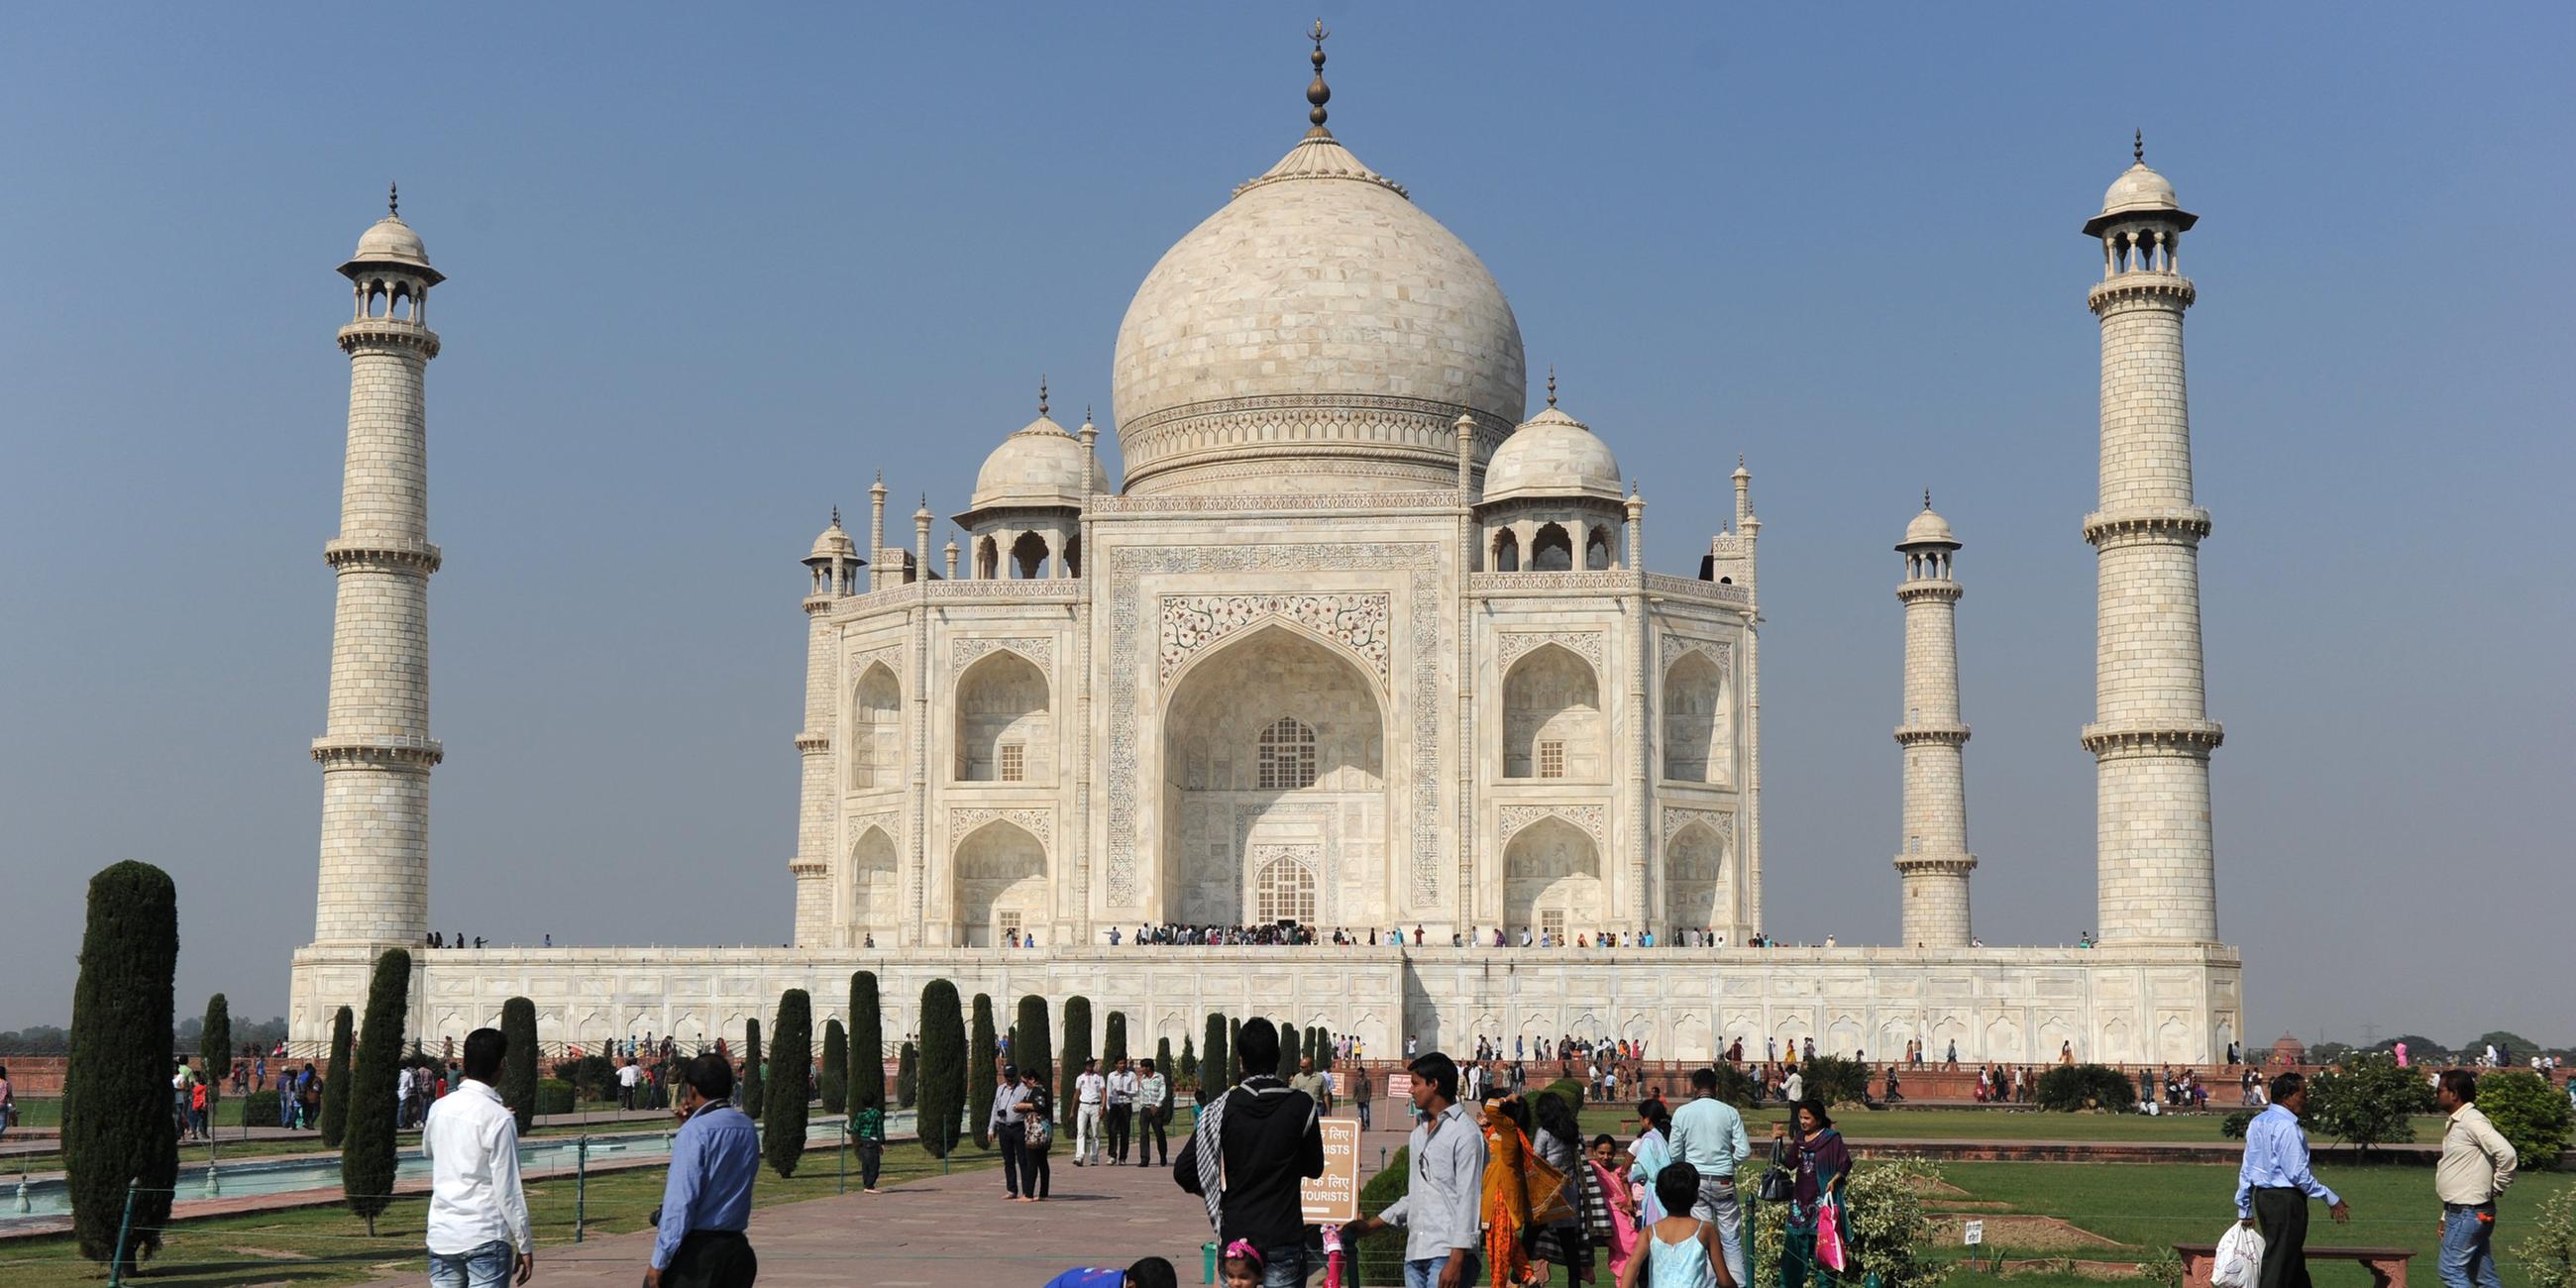 Das Taj Mahal steht vor wolkenfreiem Himmel. Menschen befinden sich auf dem Gelände.